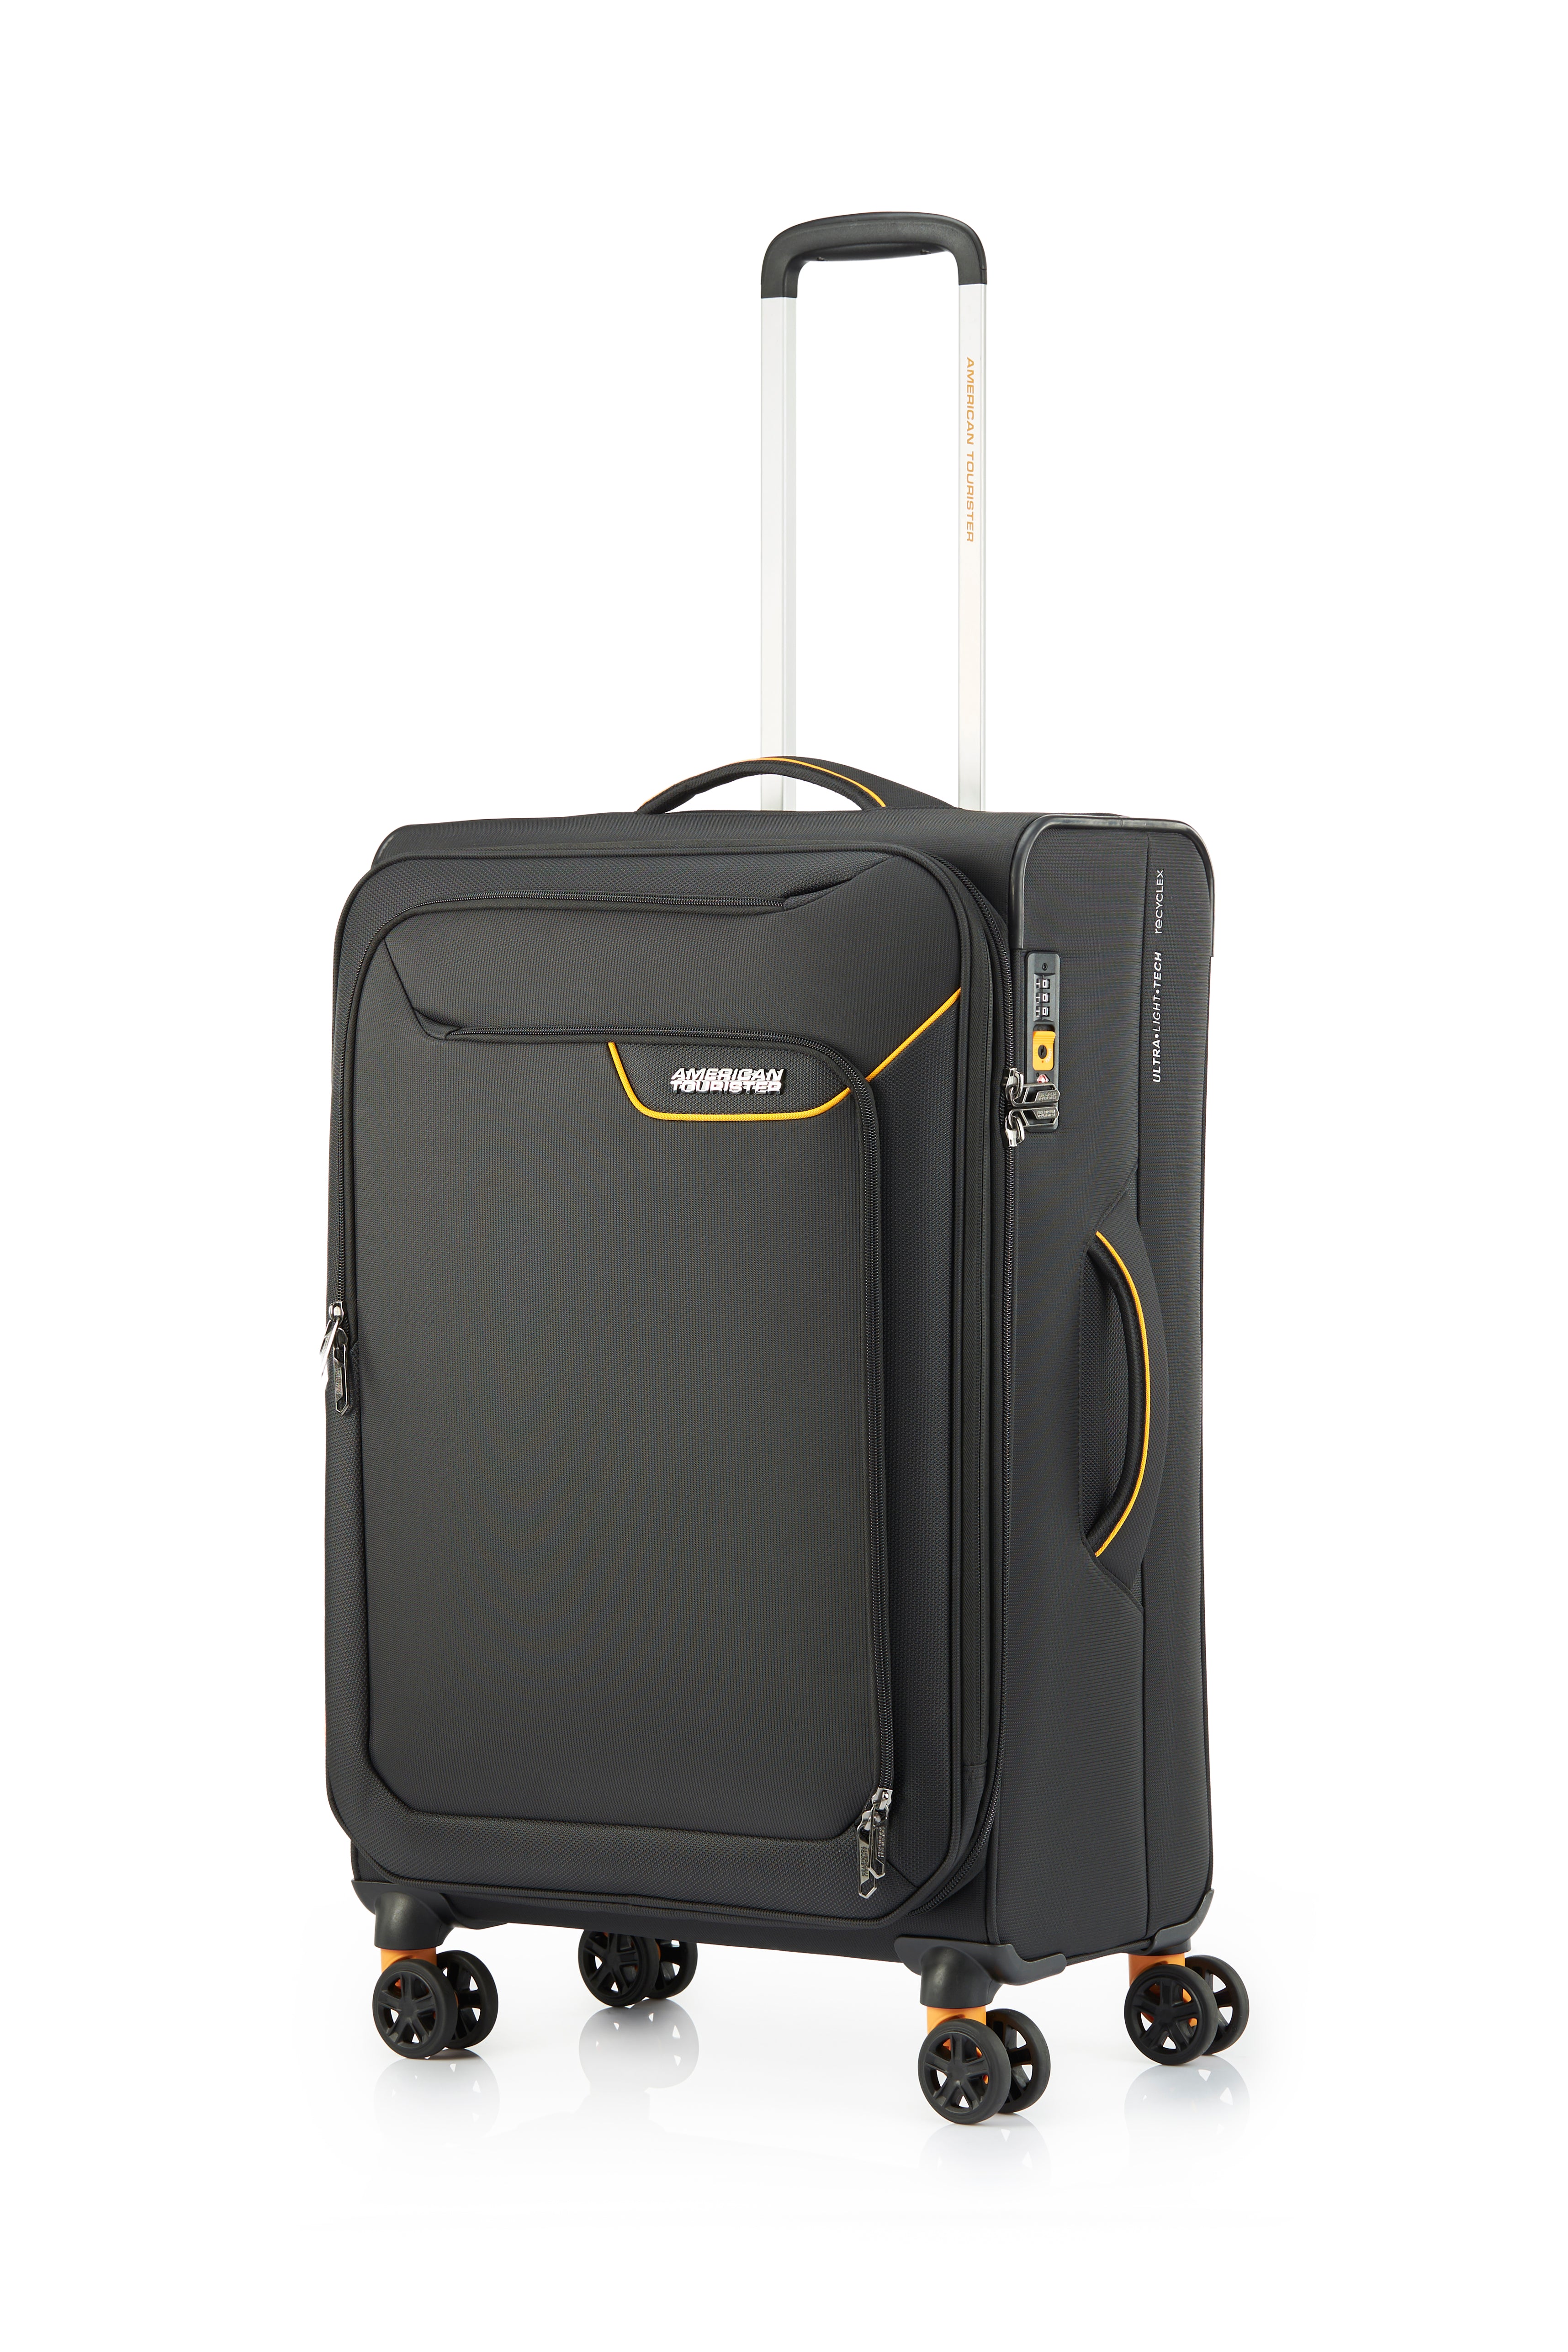 American Tourister - Applite ECO 71cm Medium Suitcase - Black/Must-1